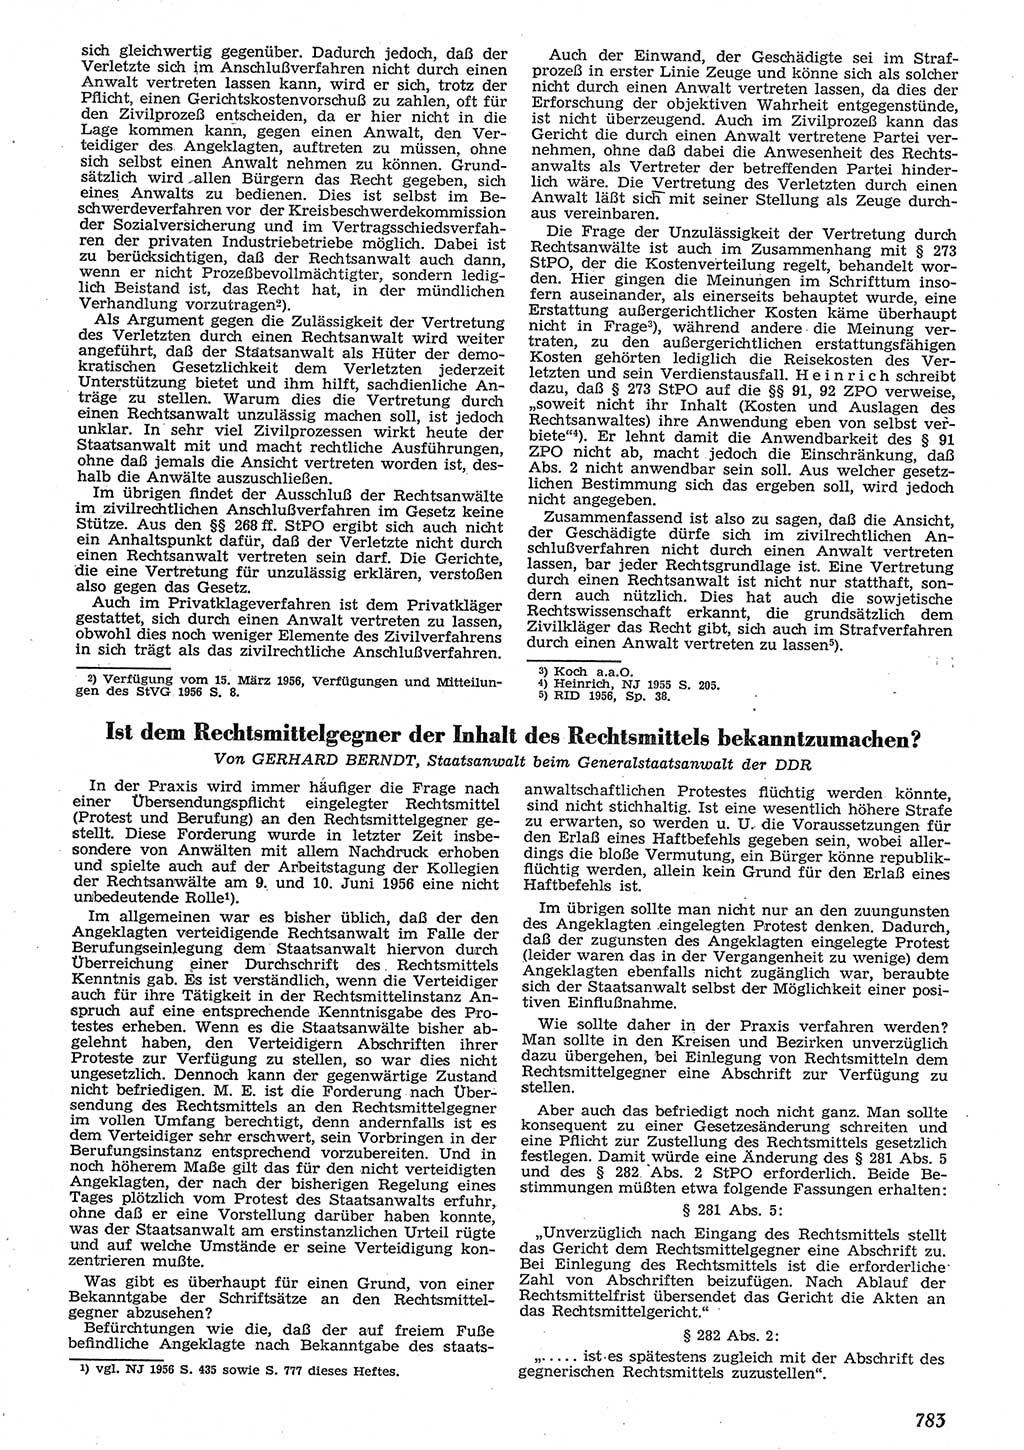 Neue Justiz (NJ), Zeitschrift für Recht und Rechtswissenschaft [Deutsche Demokratische Republik (DDR)], 10. Jahrgang 1956, Seite 783 (NJ DDR 1956, S. 783)